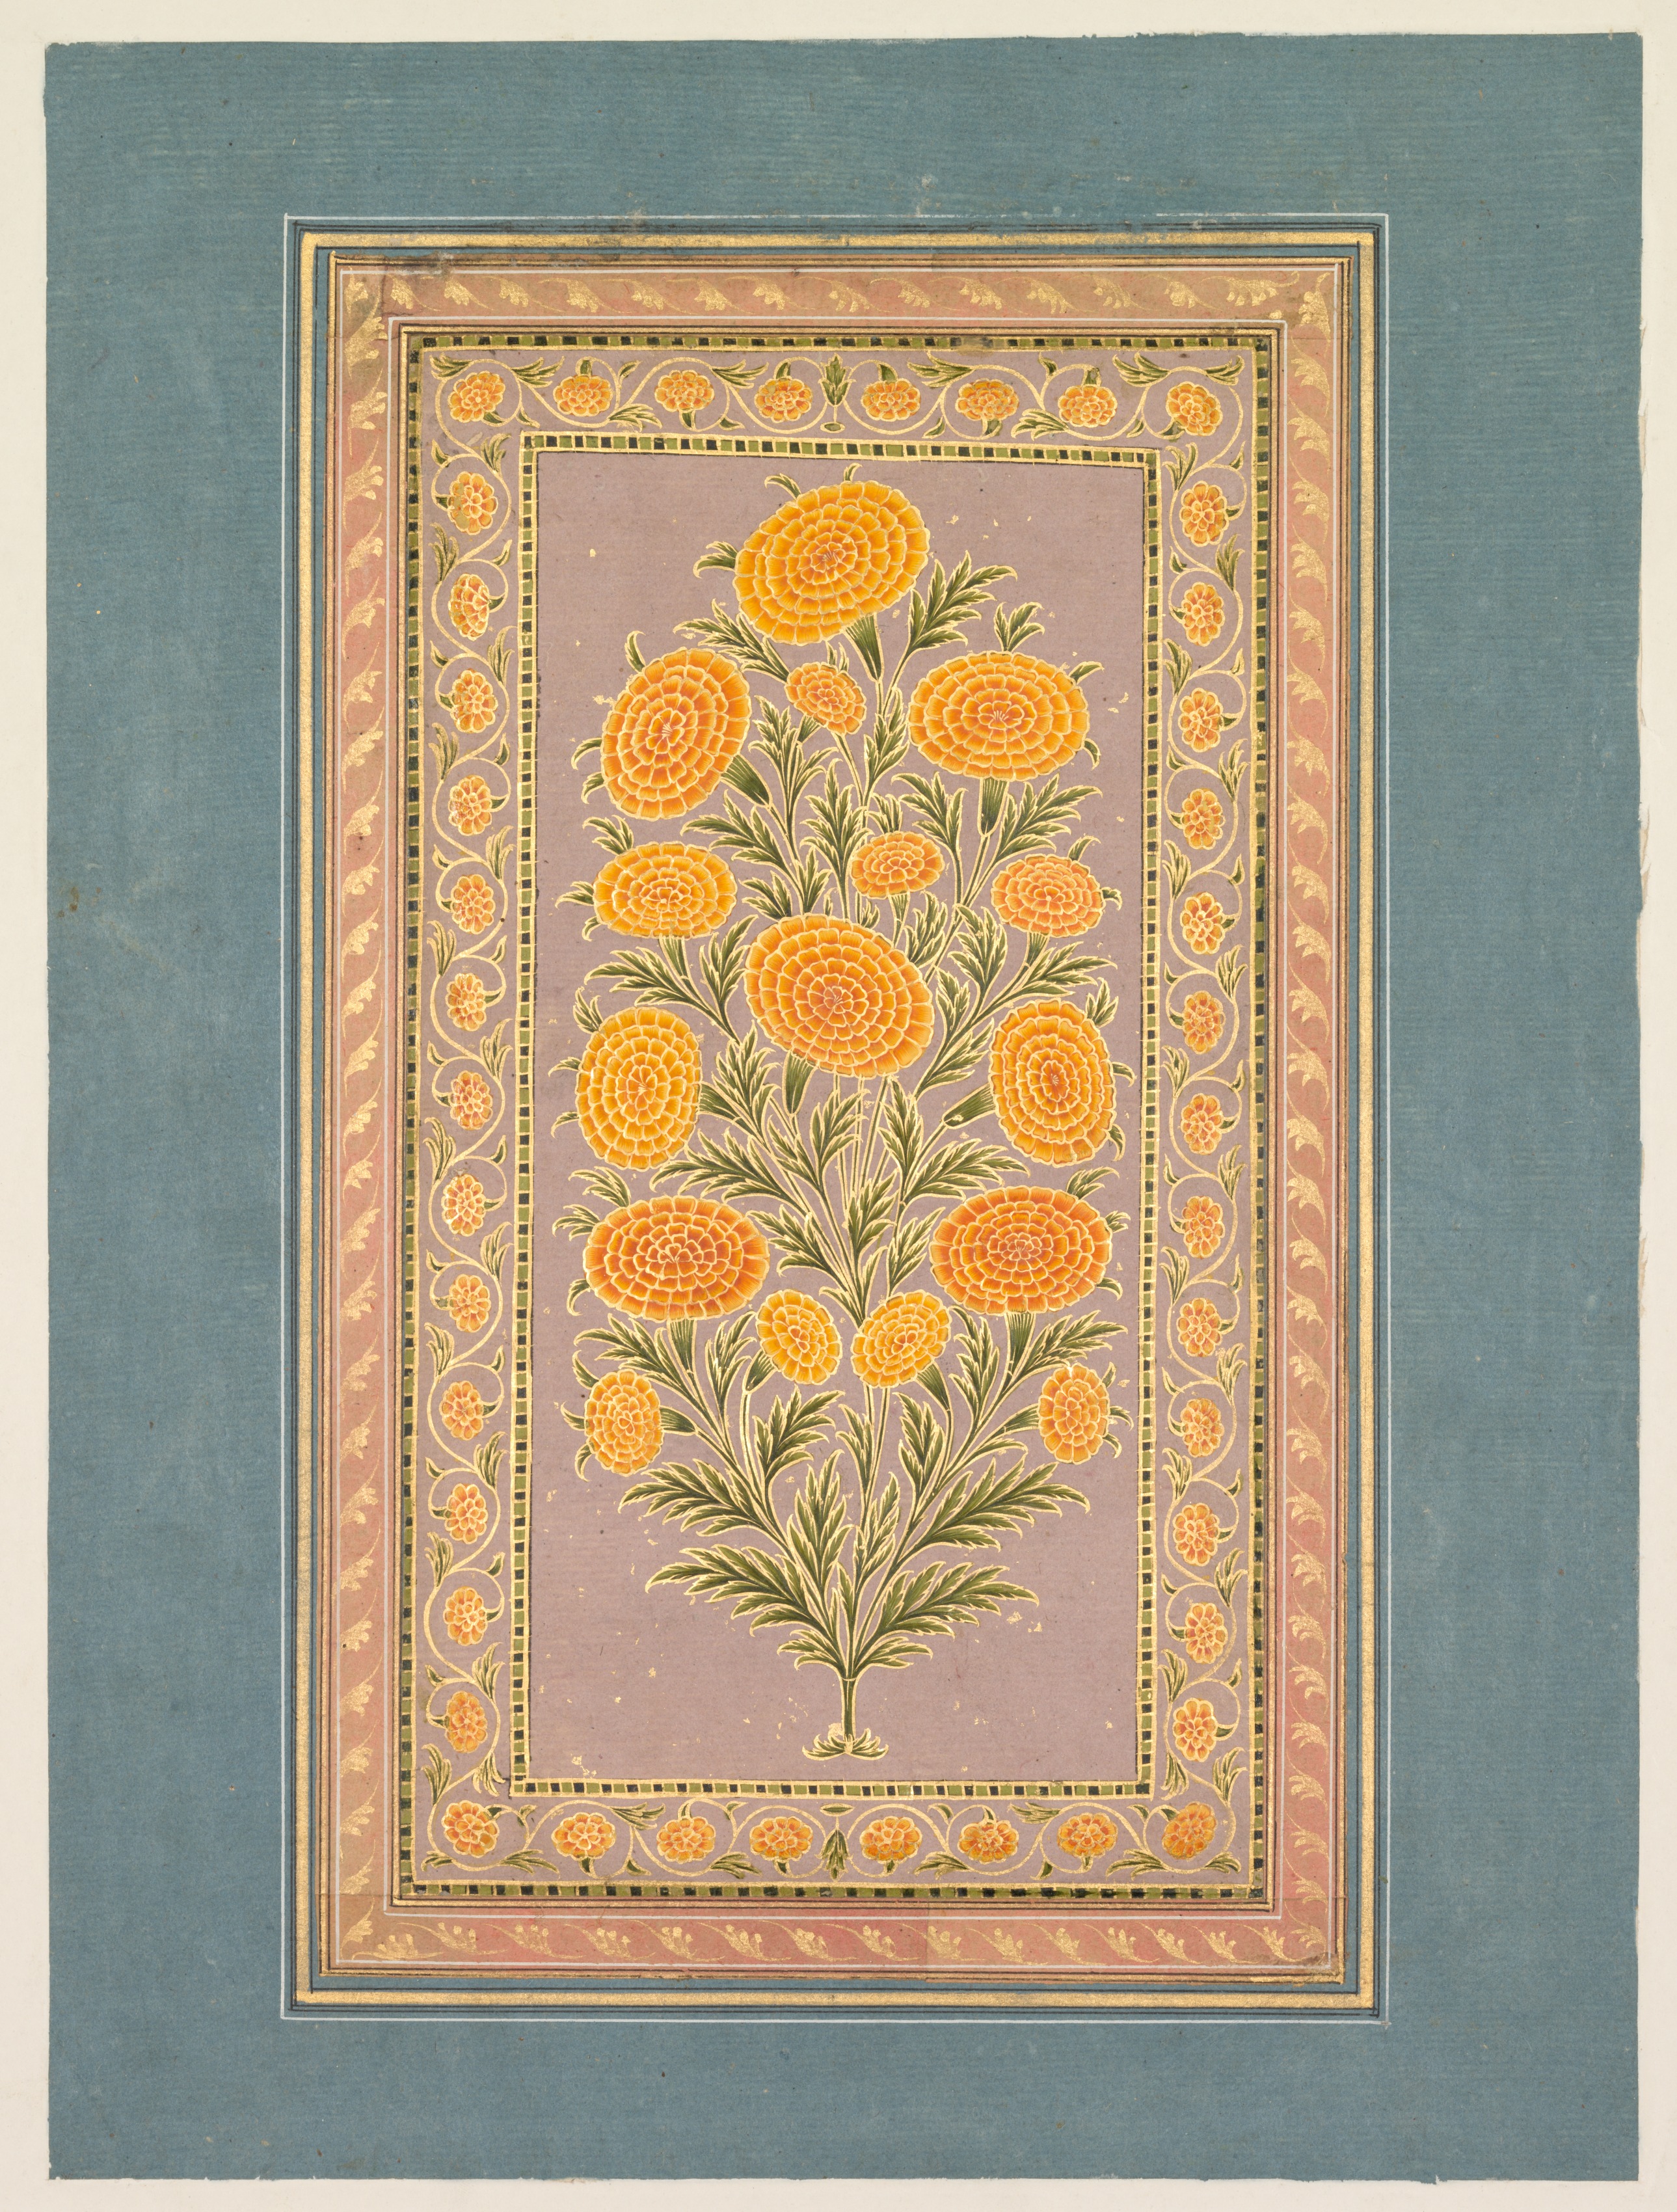 盛開的金盞花 by Unknown Artist - 約1765年 - 33.1 x 24.9 cm 